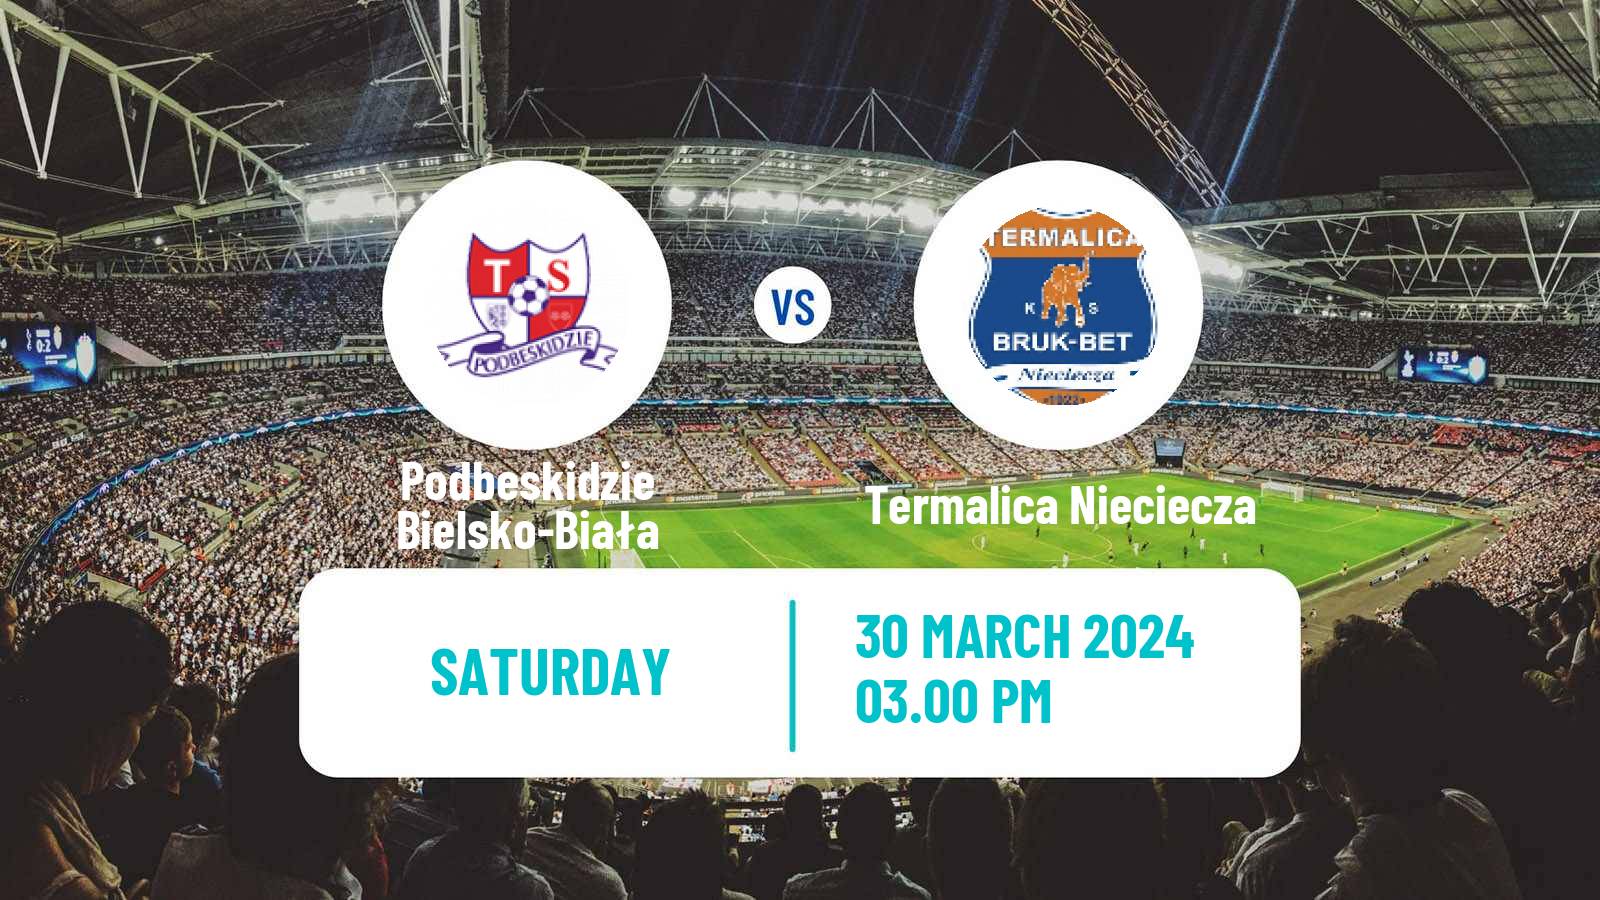 Soccer Polish Division 1 Podbeskidzie Bielsko-Biała - Termalica Nieciecza